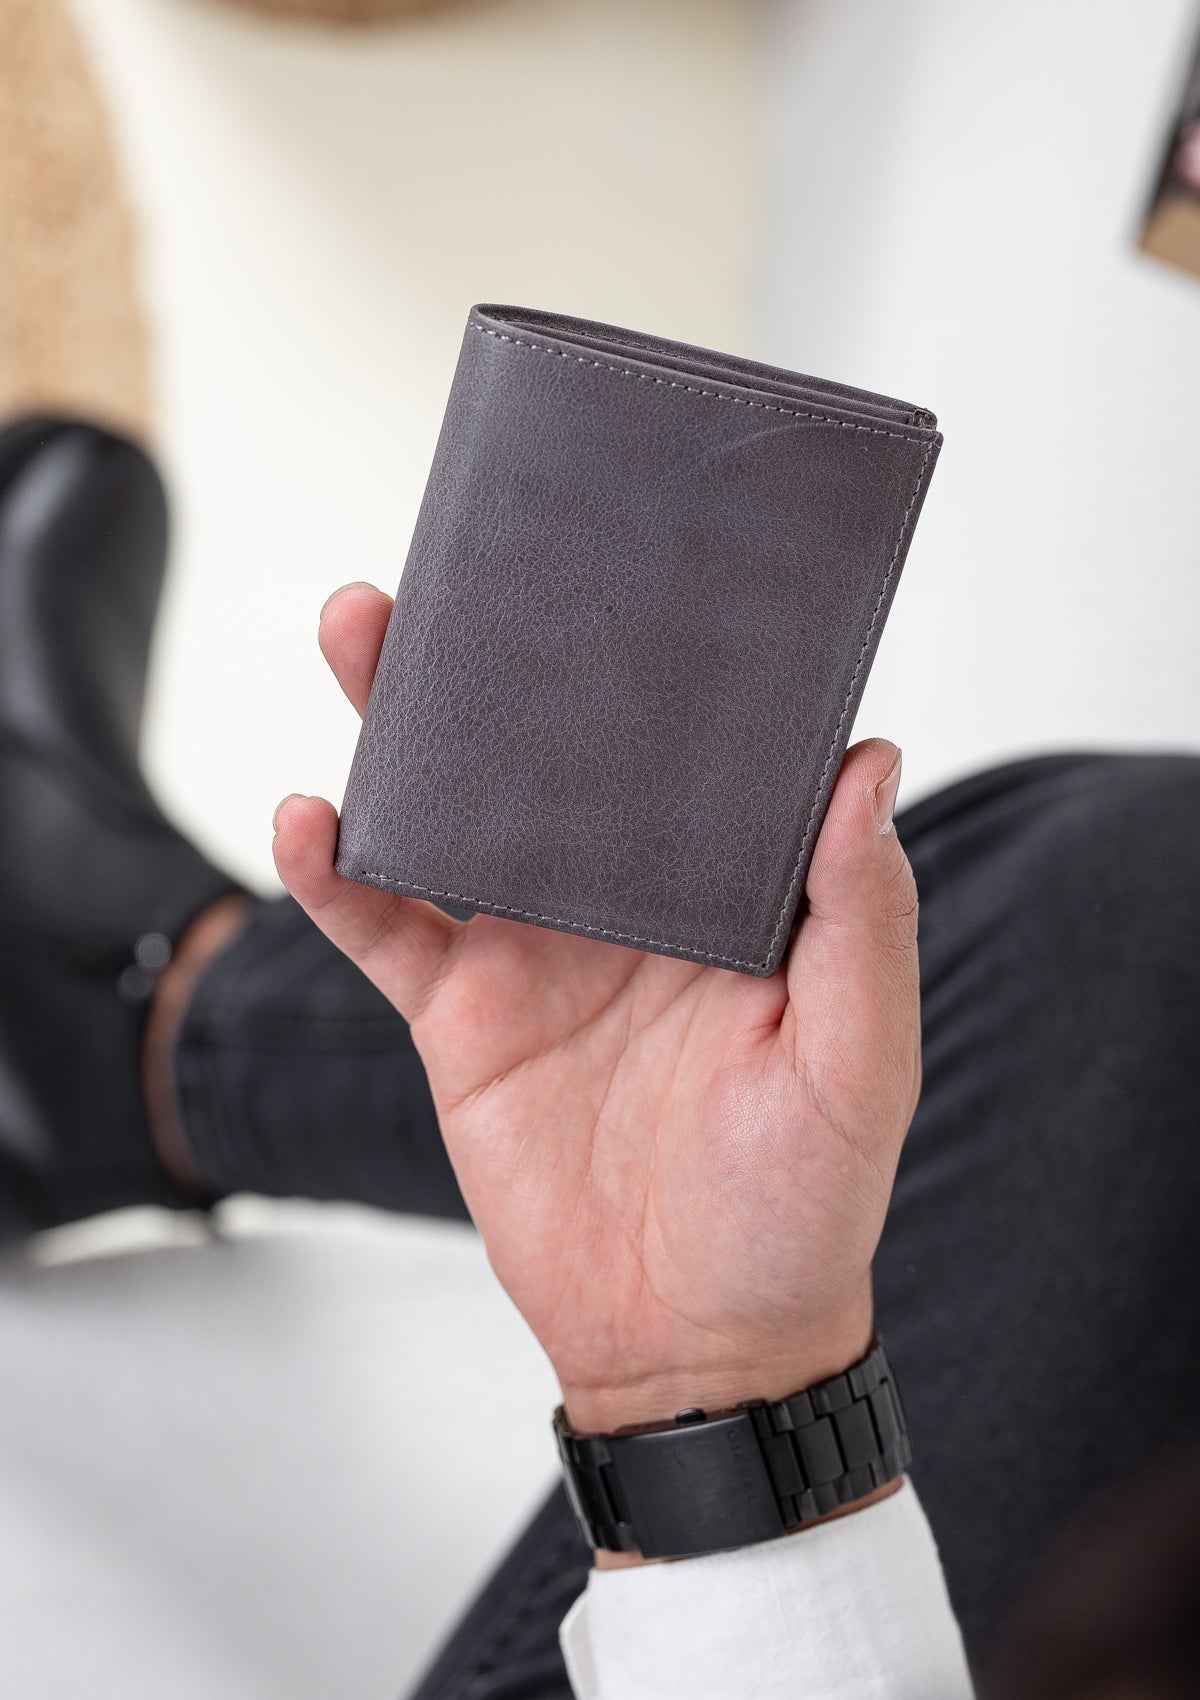 Niki Leather Tivra Crazy Leather Card Holder Wallet